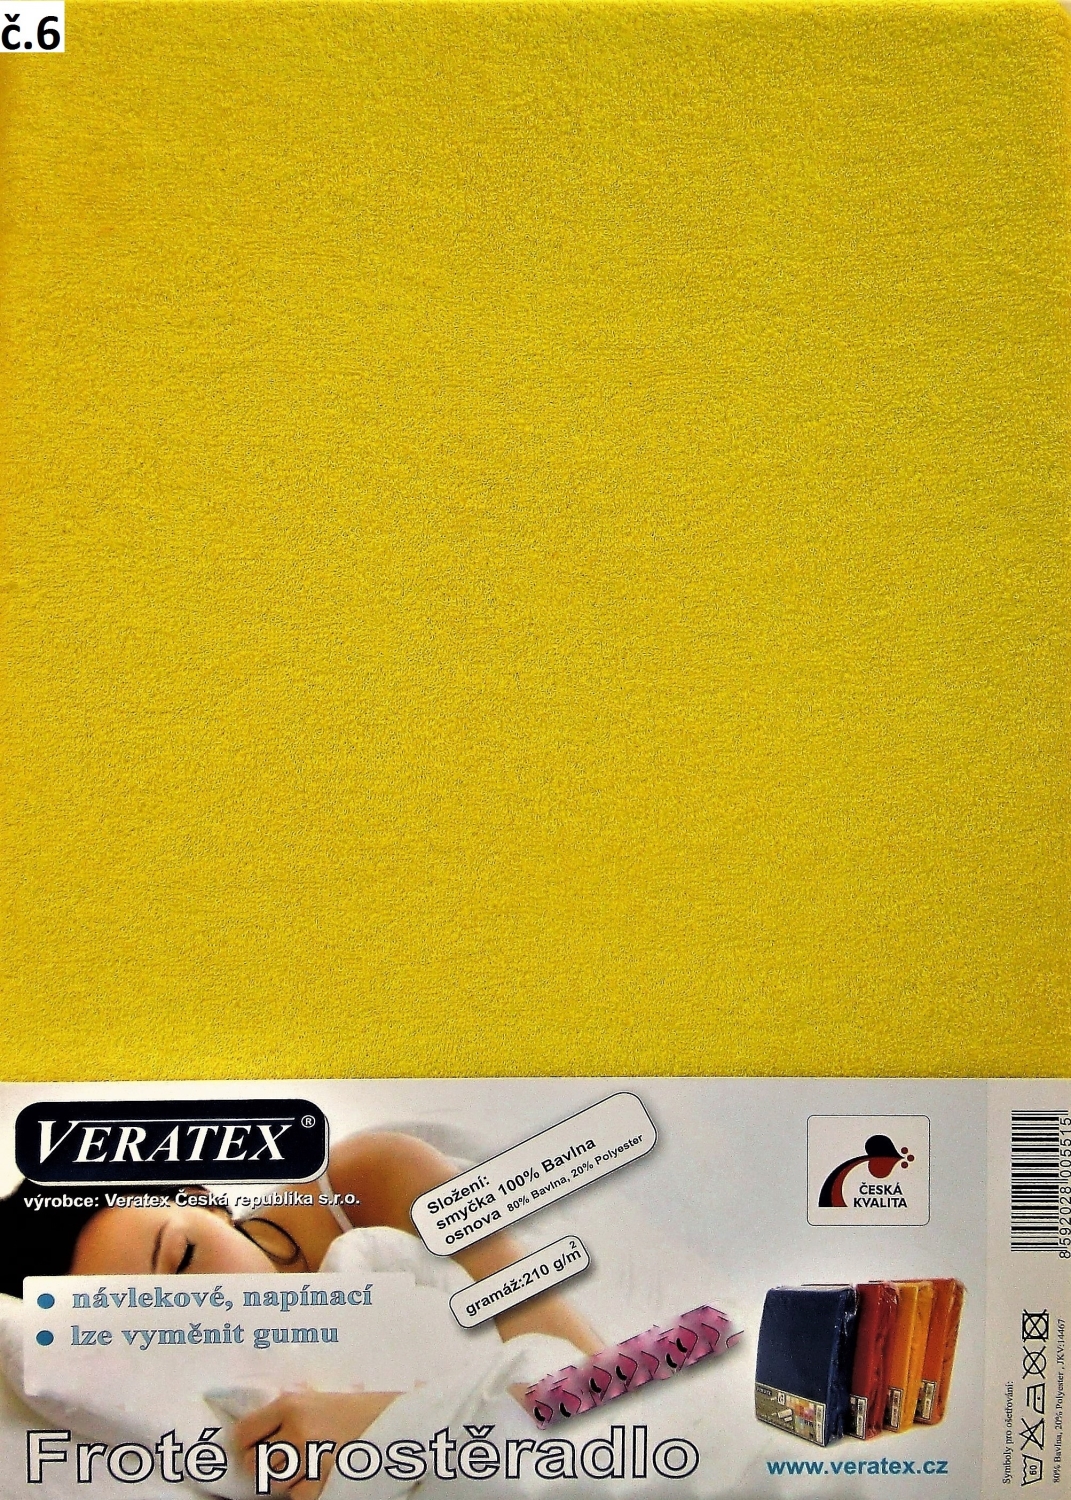 Veratex Froté prostěradlo jednolůžko 80x200/25cm (č. 6-stř.žluté)